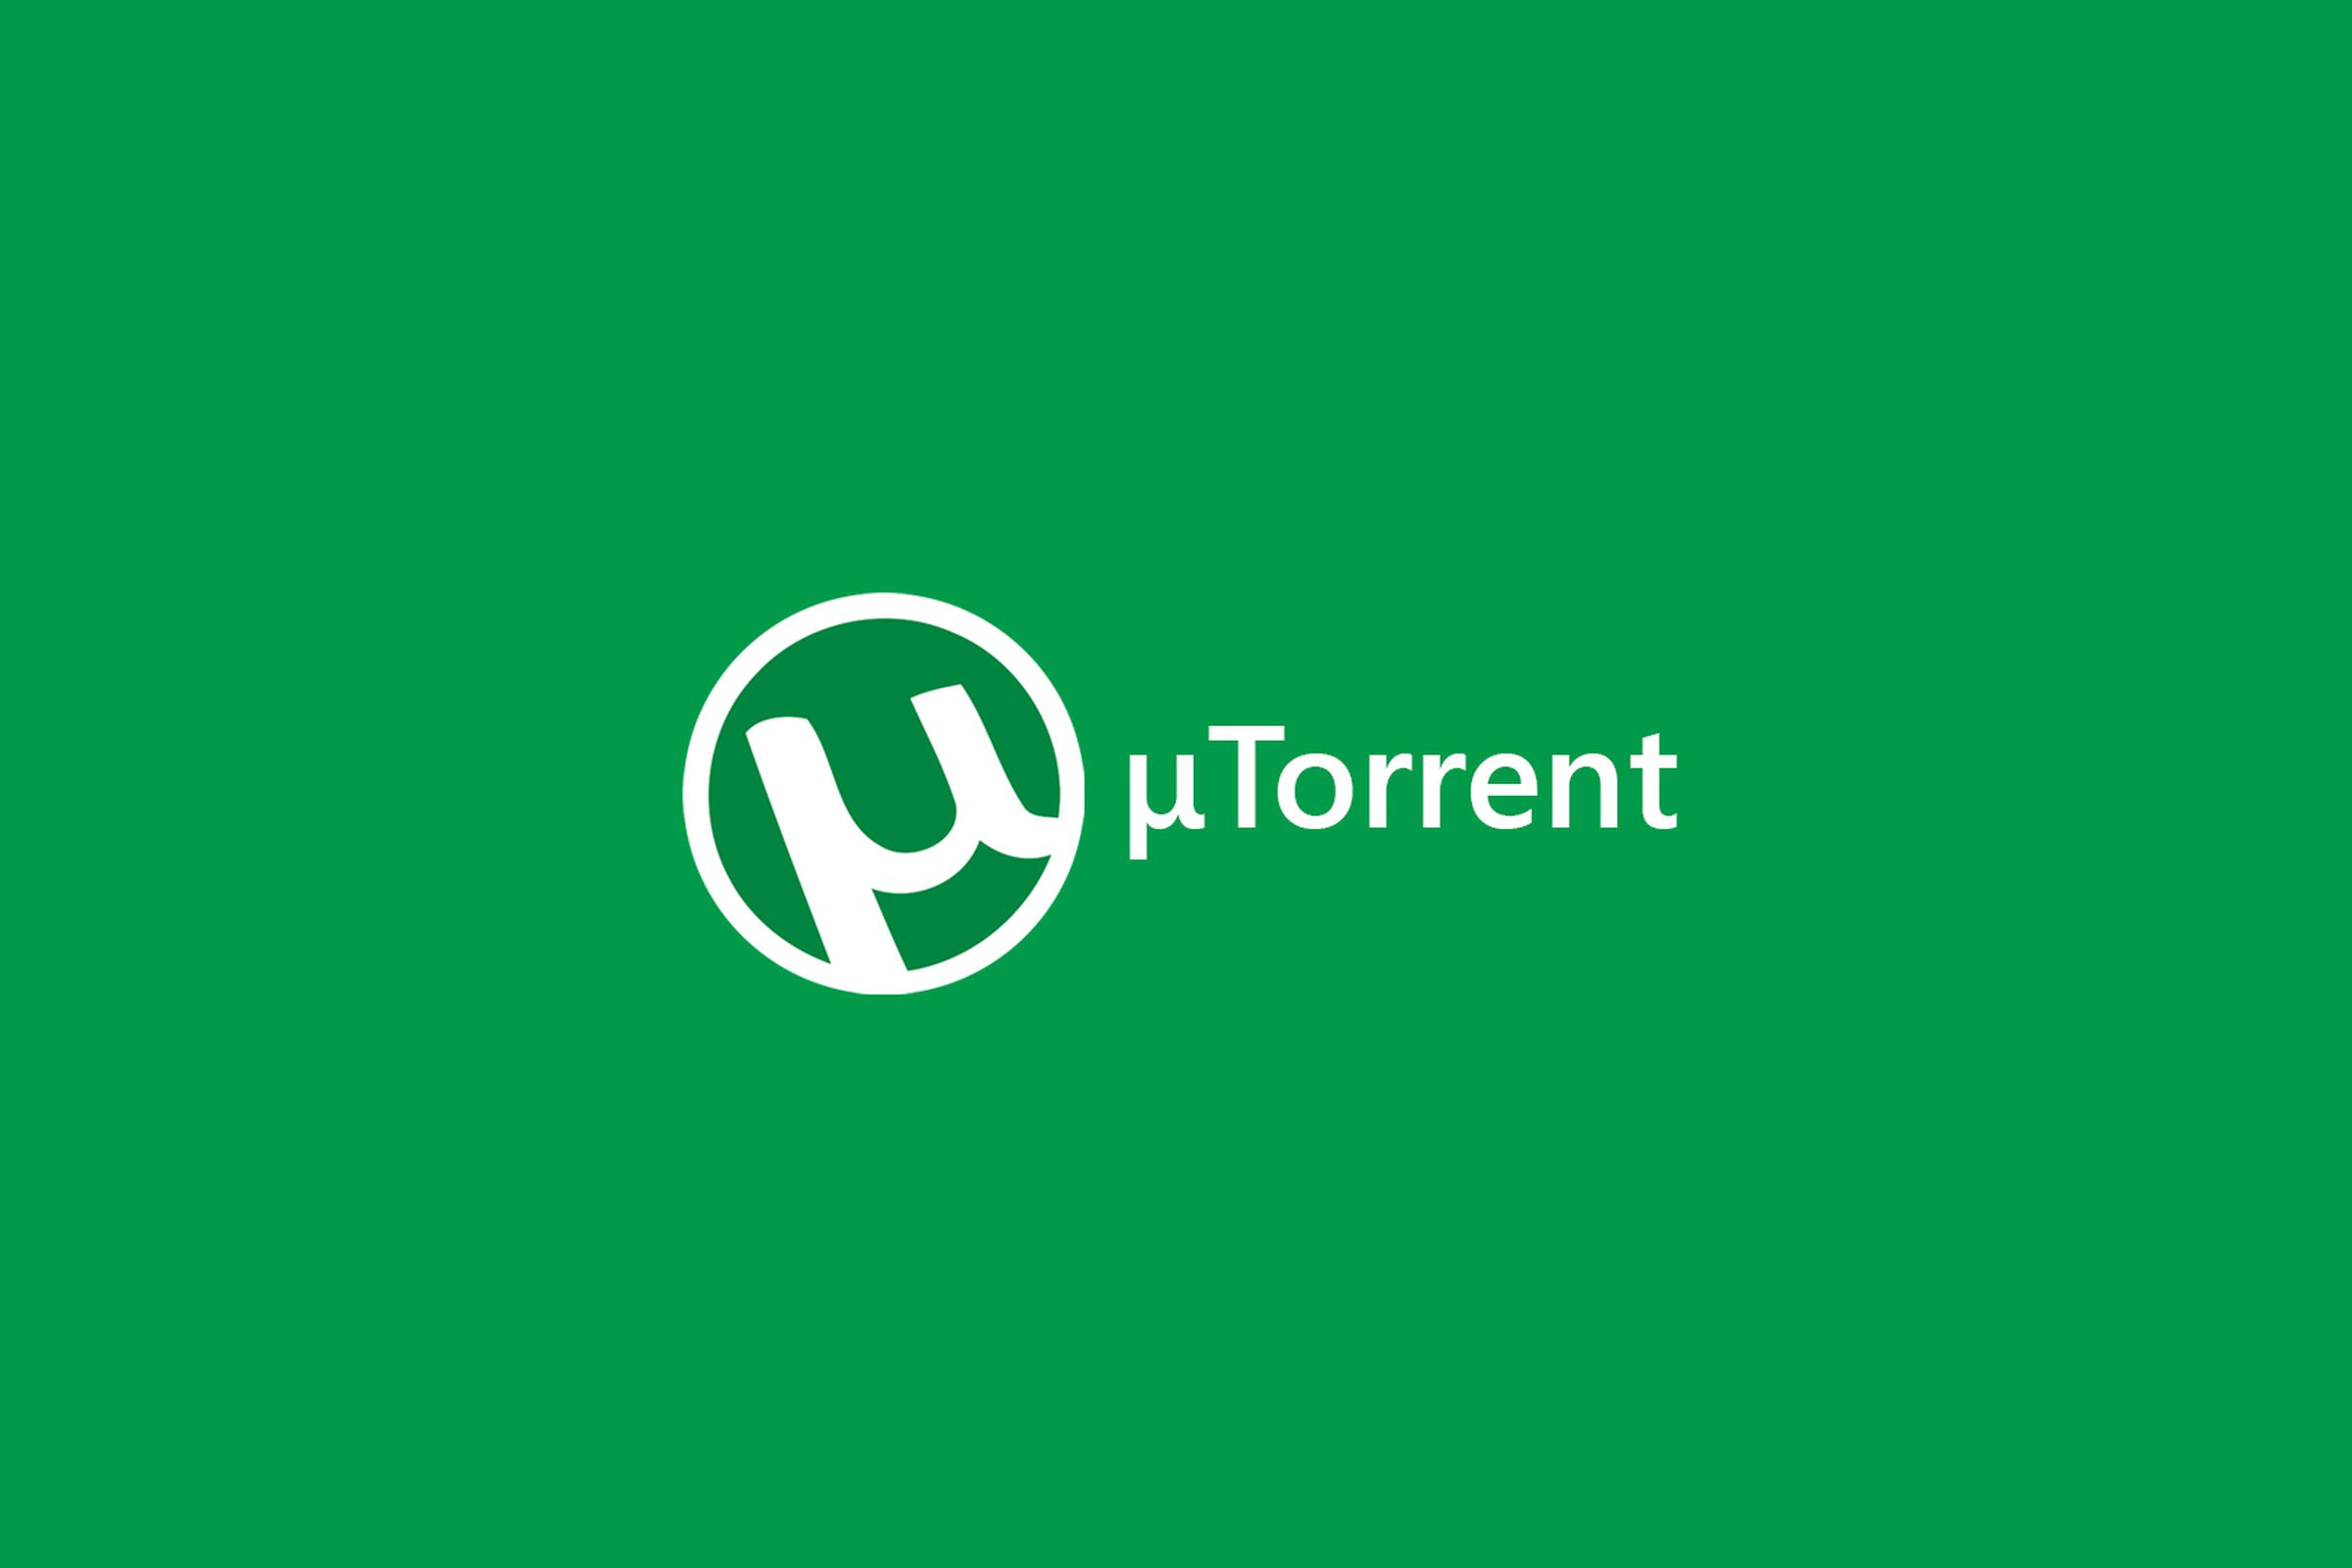 Utorrent com intl. Utorrent. Utorrent картинки. Значок utorrent.